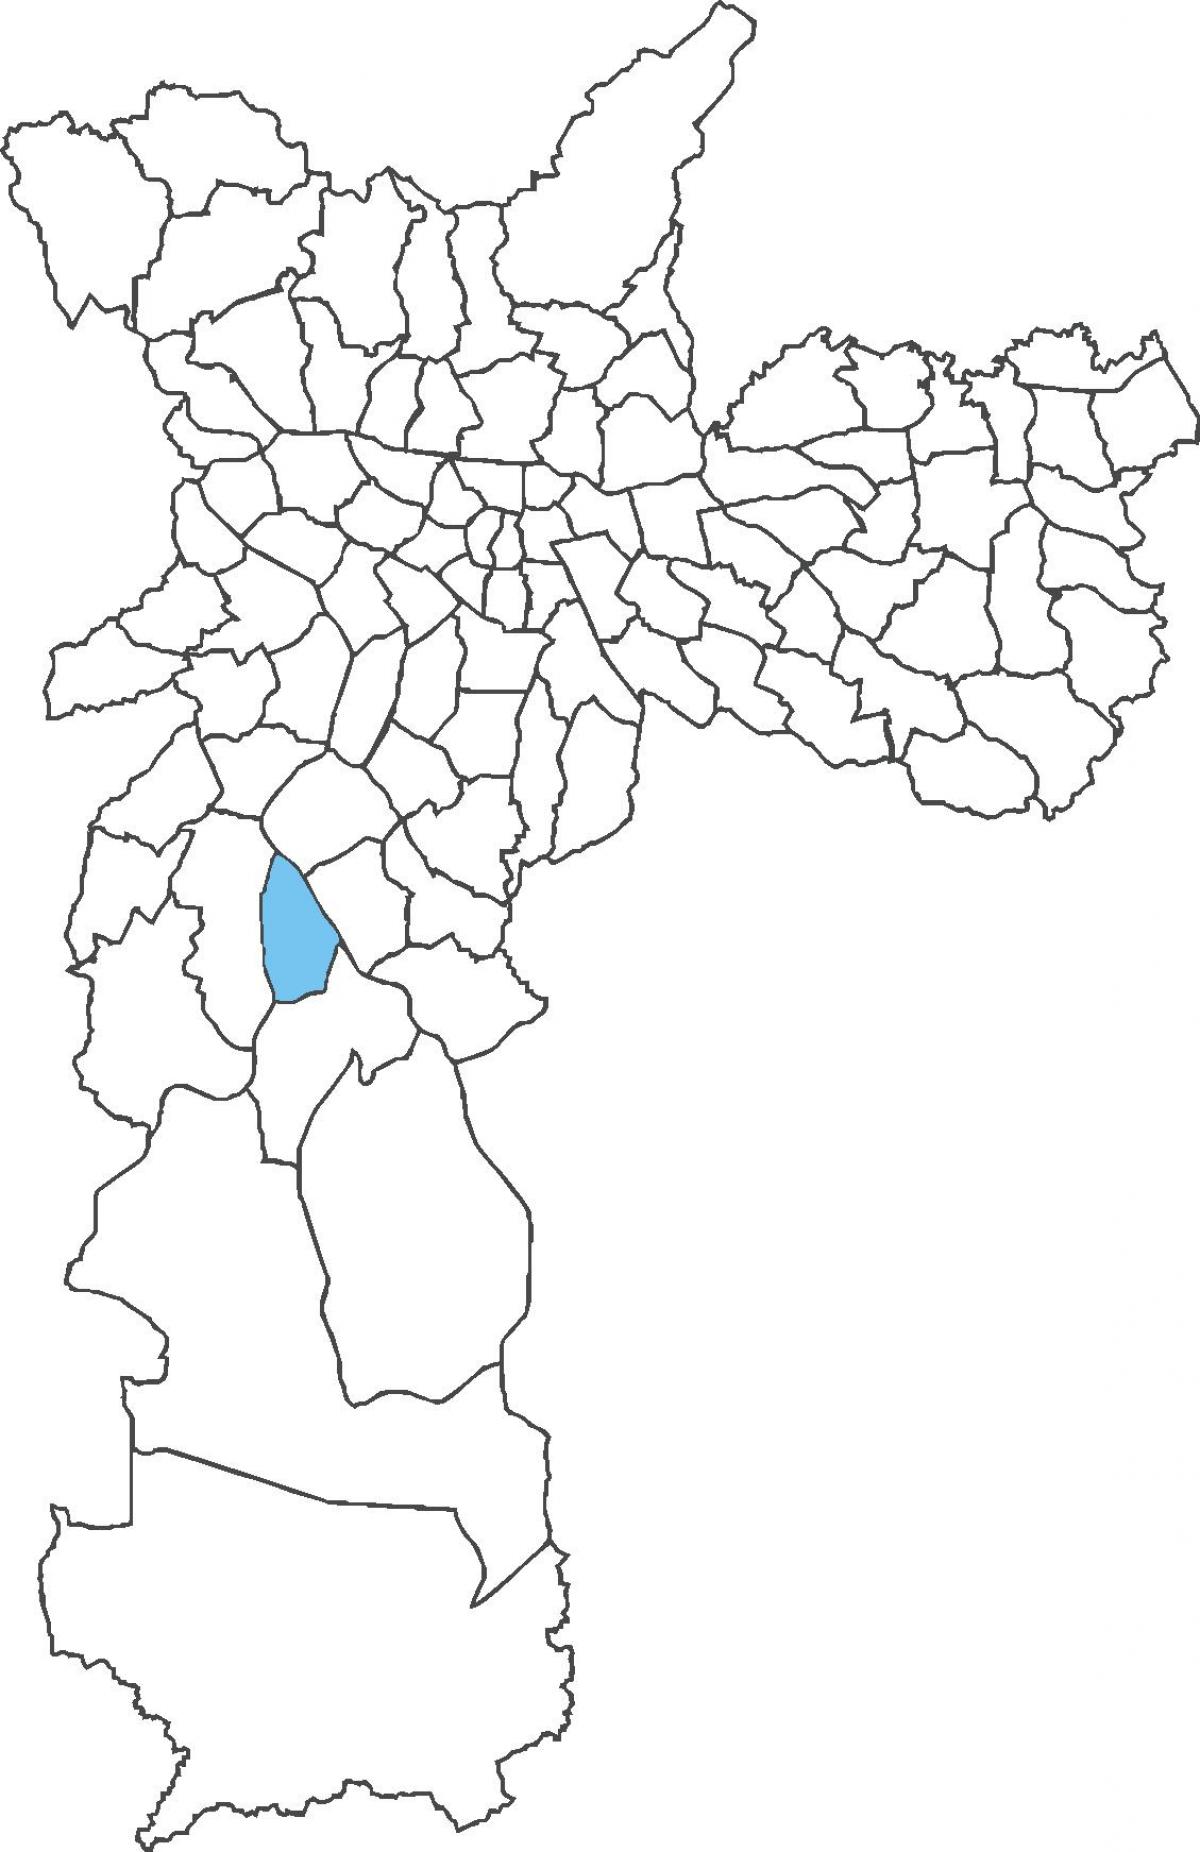 نقشہ کے Socorro ضلع